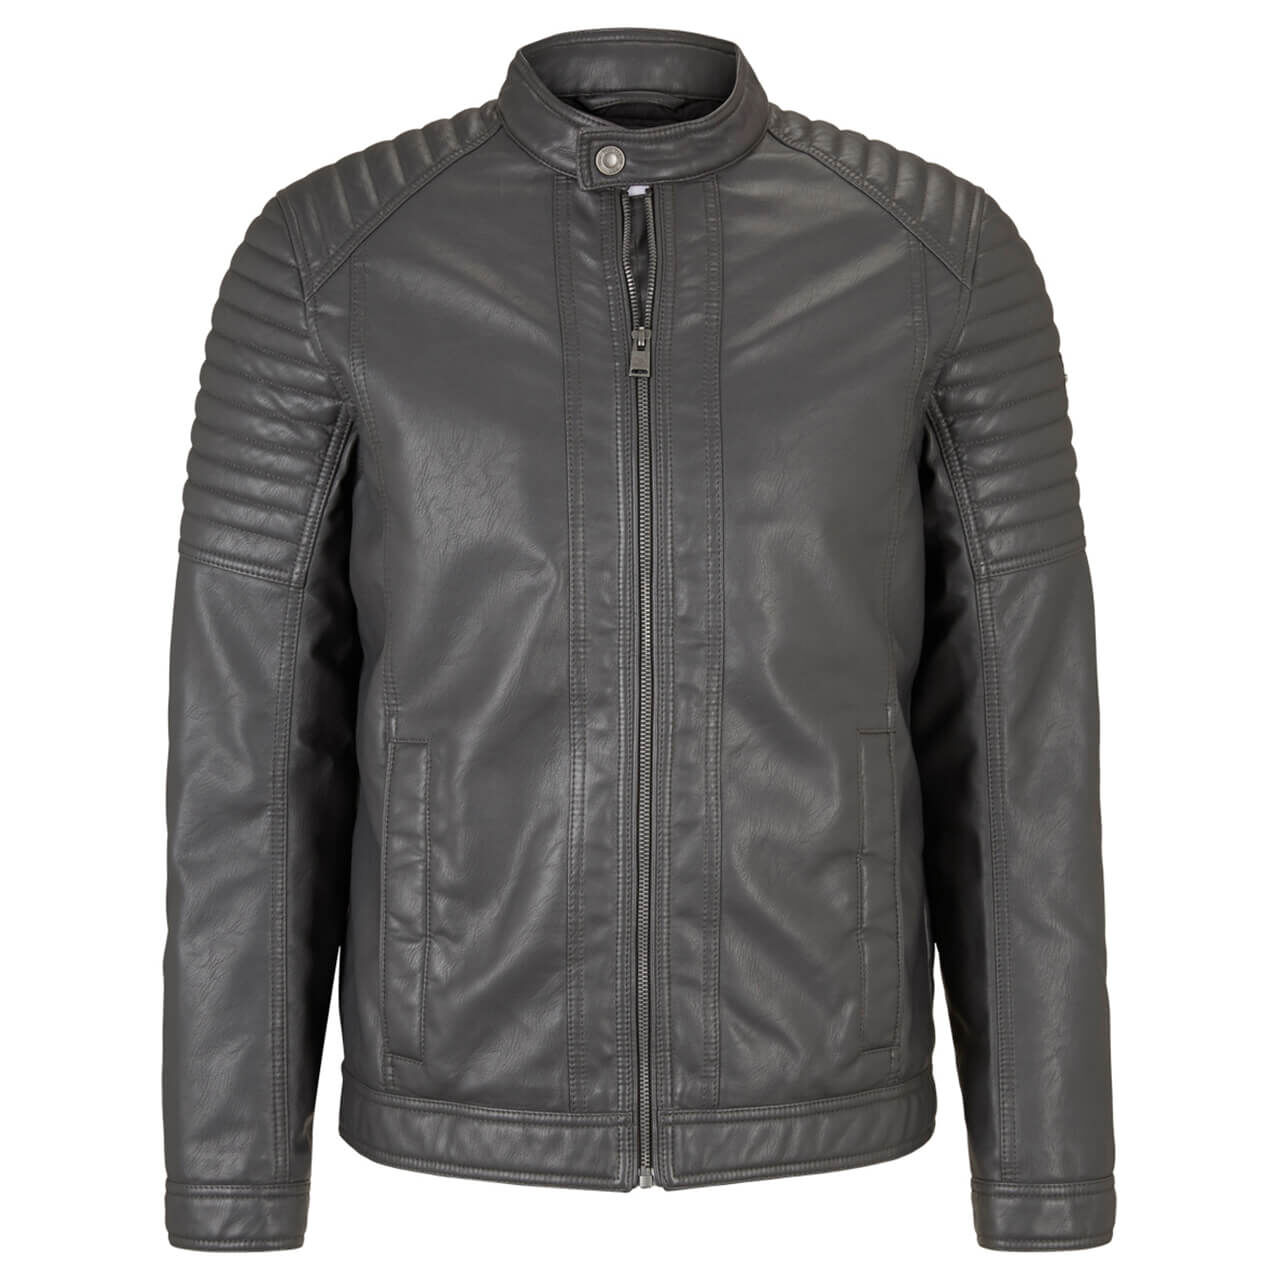 Tom Tailor Faux Leather Biker Jacket Jacke für Herren in Anthrazit, FarbNr.: 26306